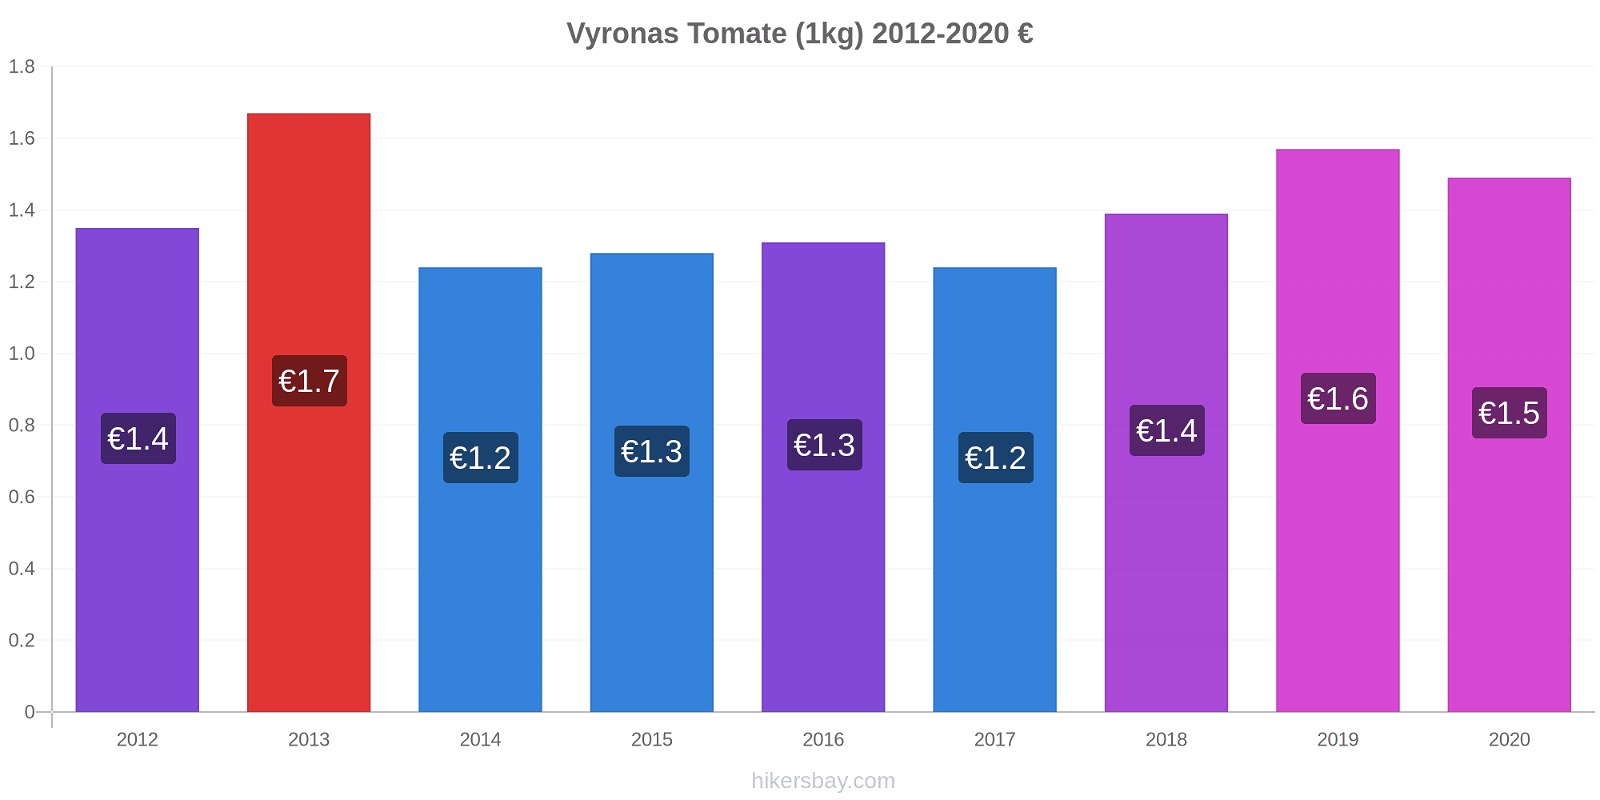 Vyronas variação de preço Tomate (1kg) hikersbay.com